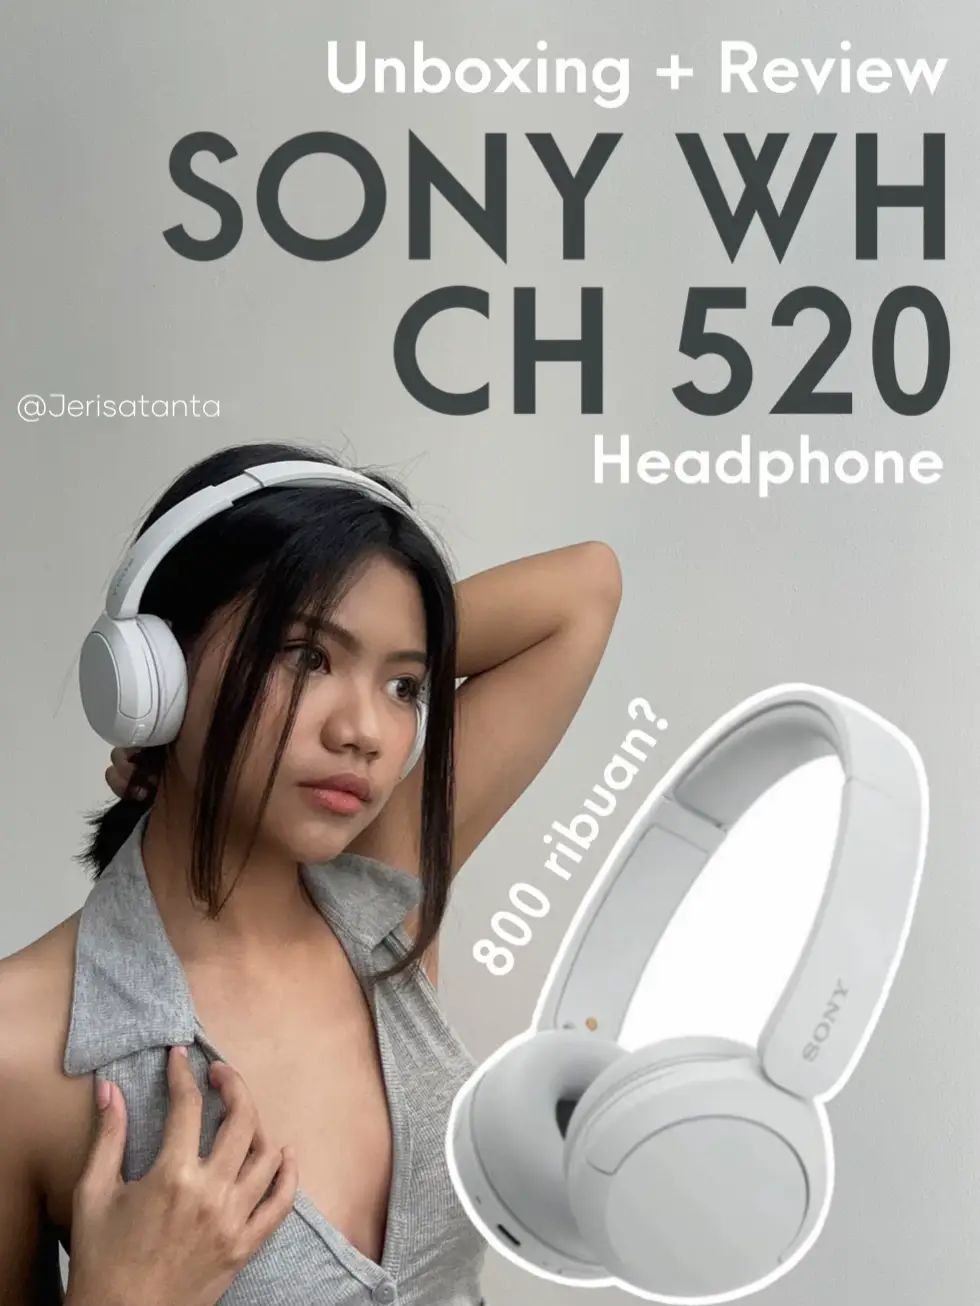 Headphone aesthetic, headphones, sony